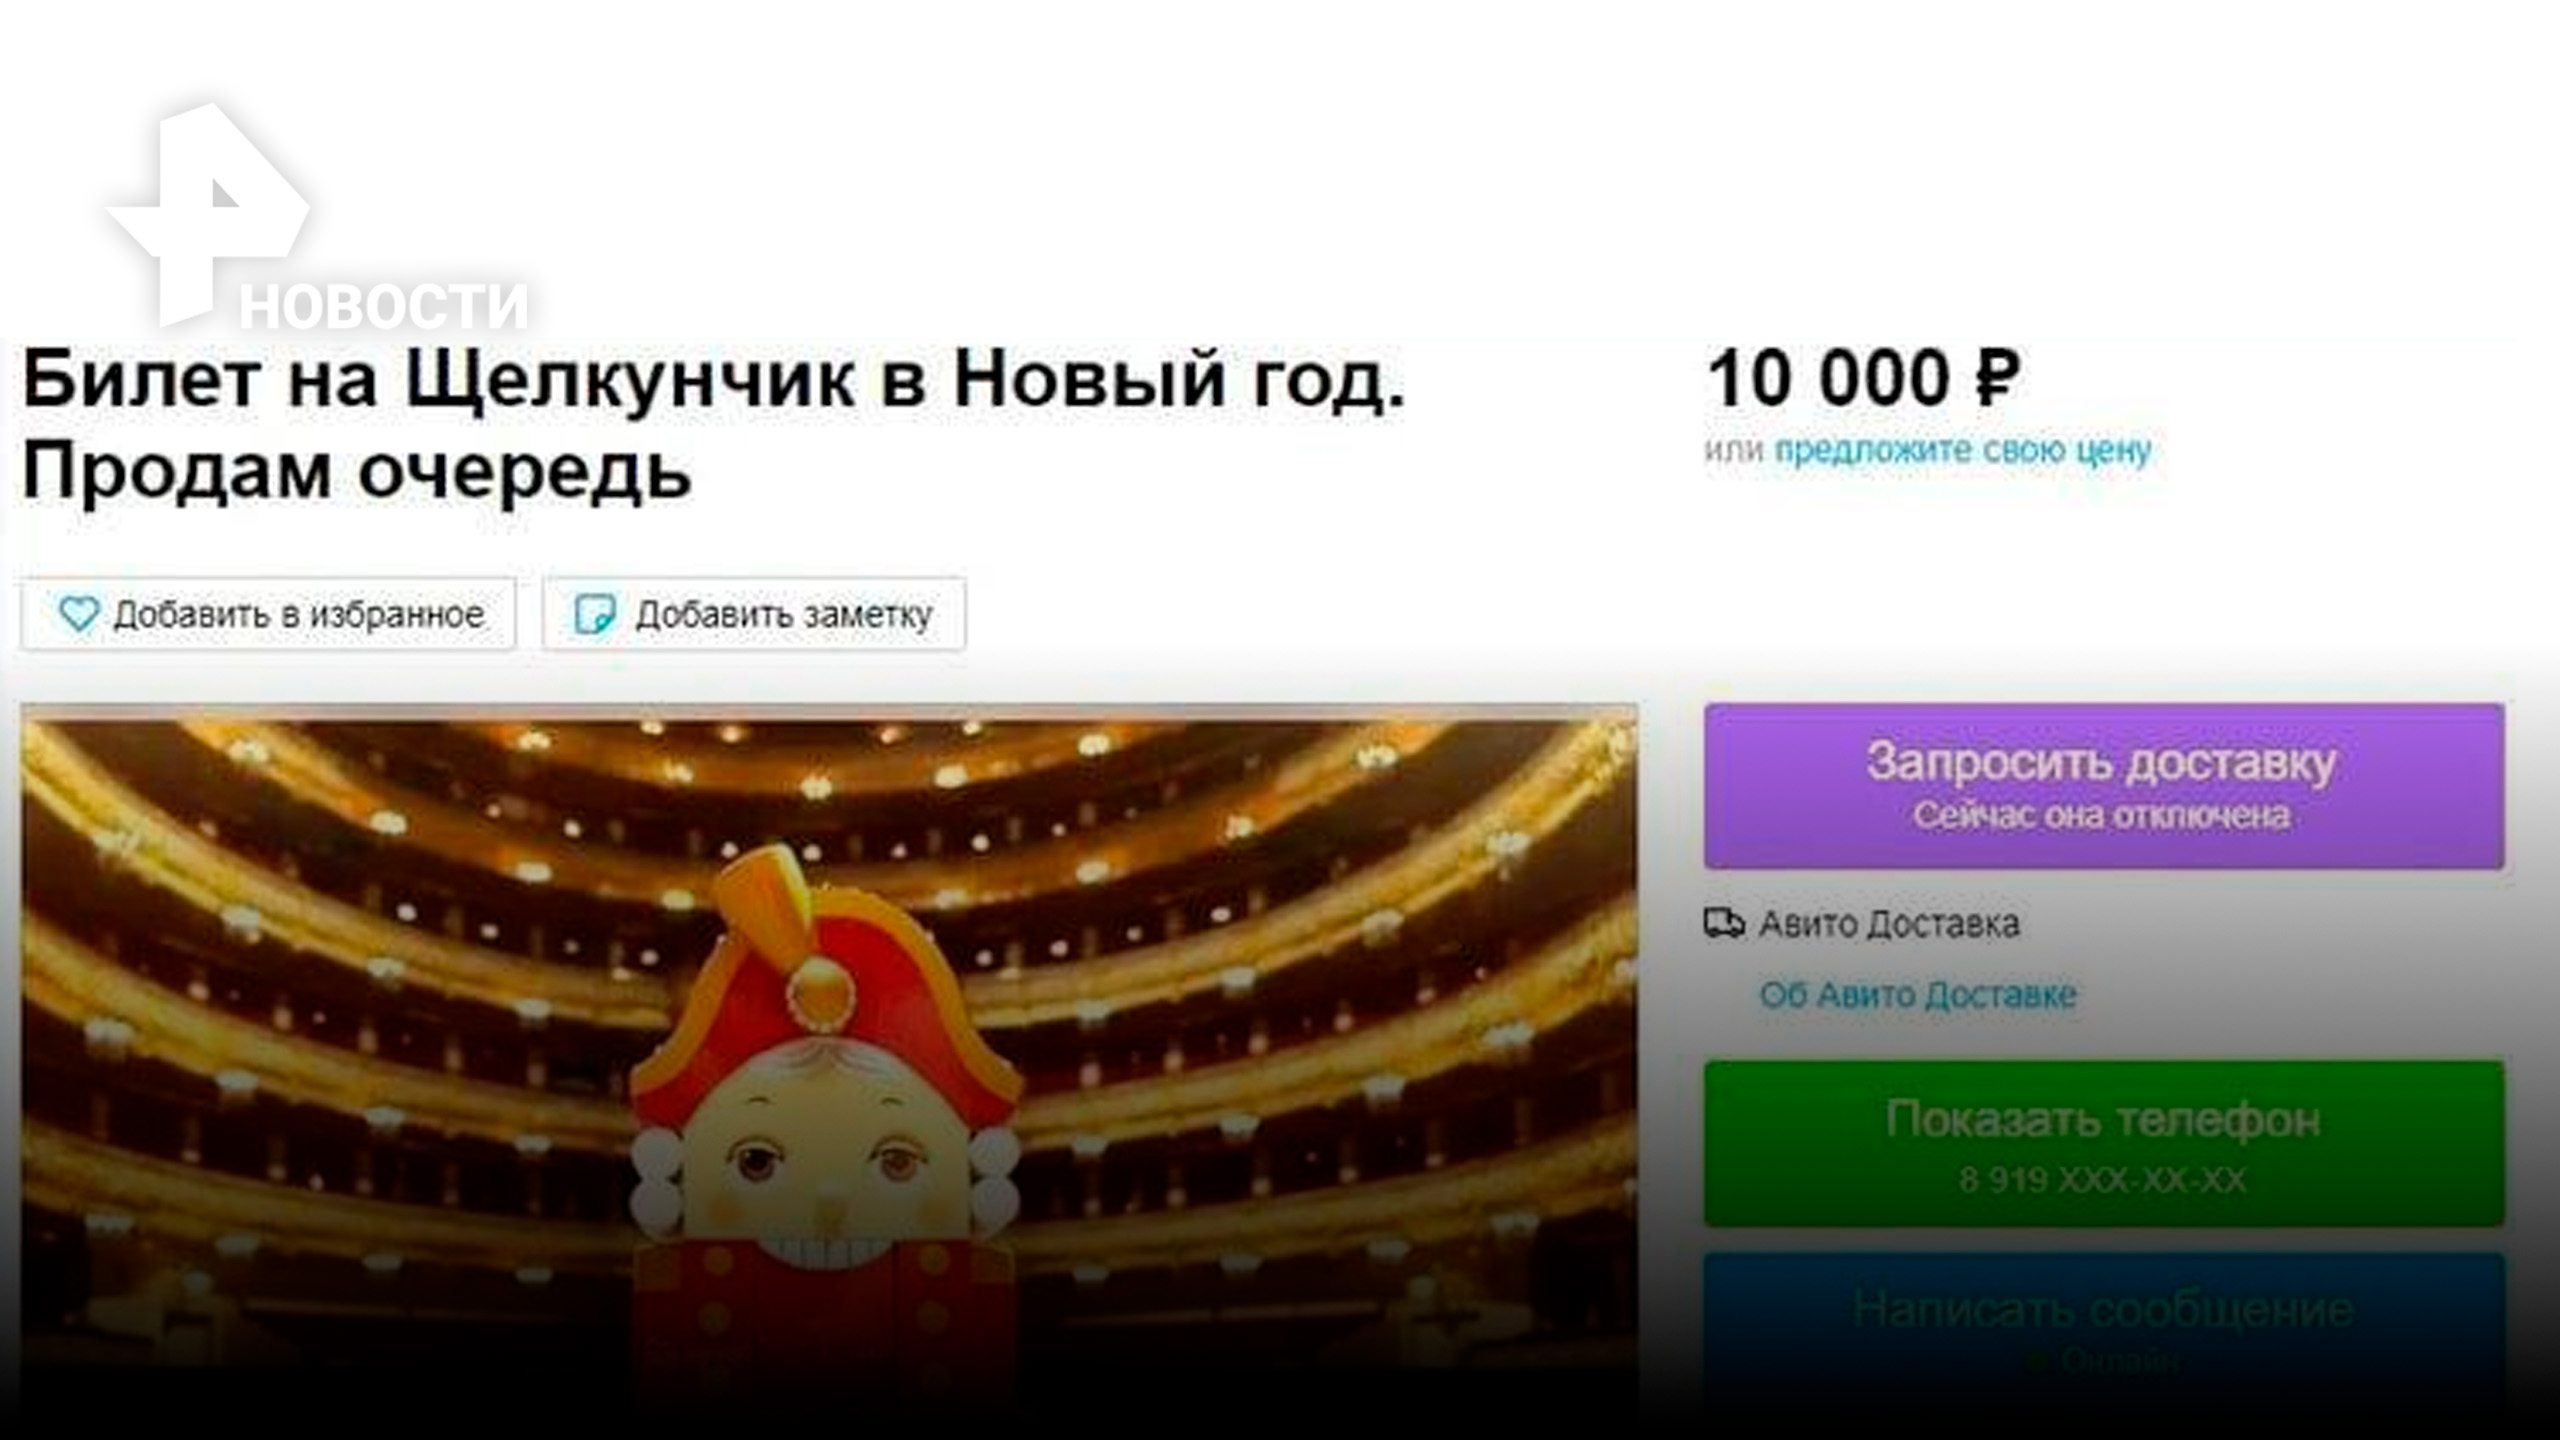 "Продам место в очереди за 10 тысяч", - как москвичи наживаются на балете "Щелкунчик" / РЕН Новости